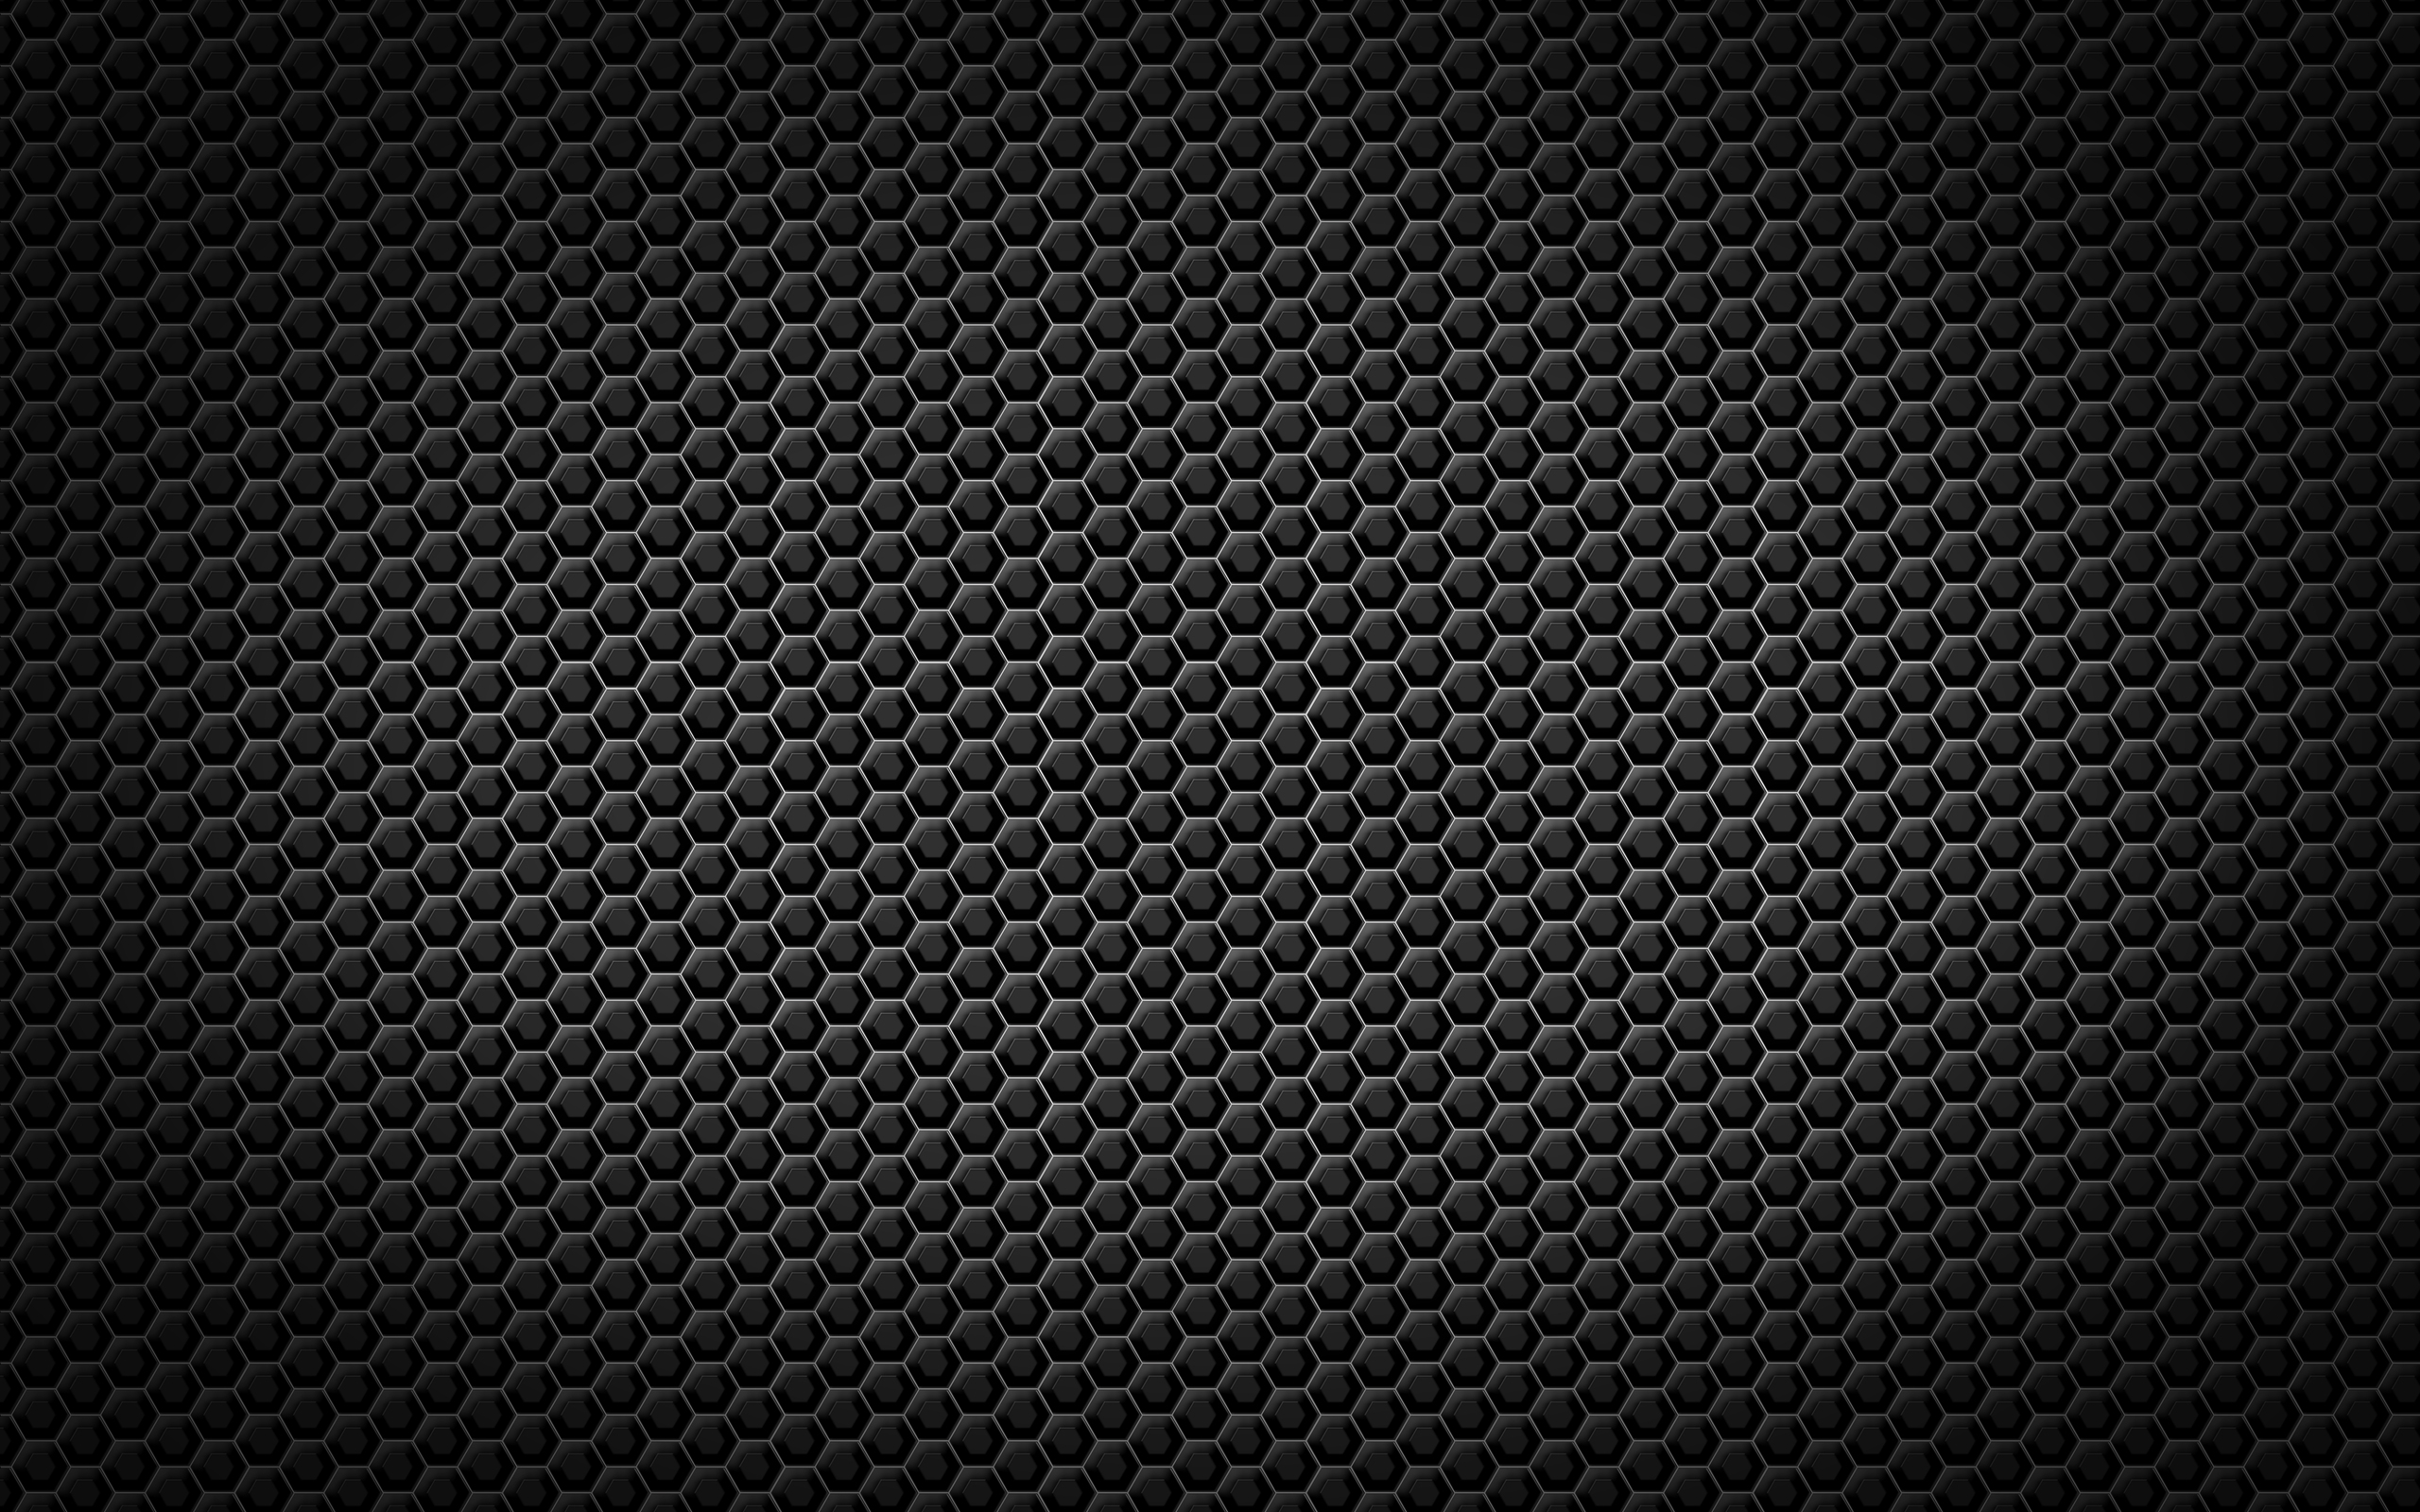 Hình nền hoa văn đen WallpaperSafari: Tận hưởng không gian sống đầy phong cách và sang trọng với hình nền hoa văn đen WallpaperSafari. Với mẫu hoa văn độc đáo, bạn có thể tạo ra một không gian sống độc đáo, đầy cá tính. Hãy xem hình ảnh để cảm nhận được sự khác biệt.